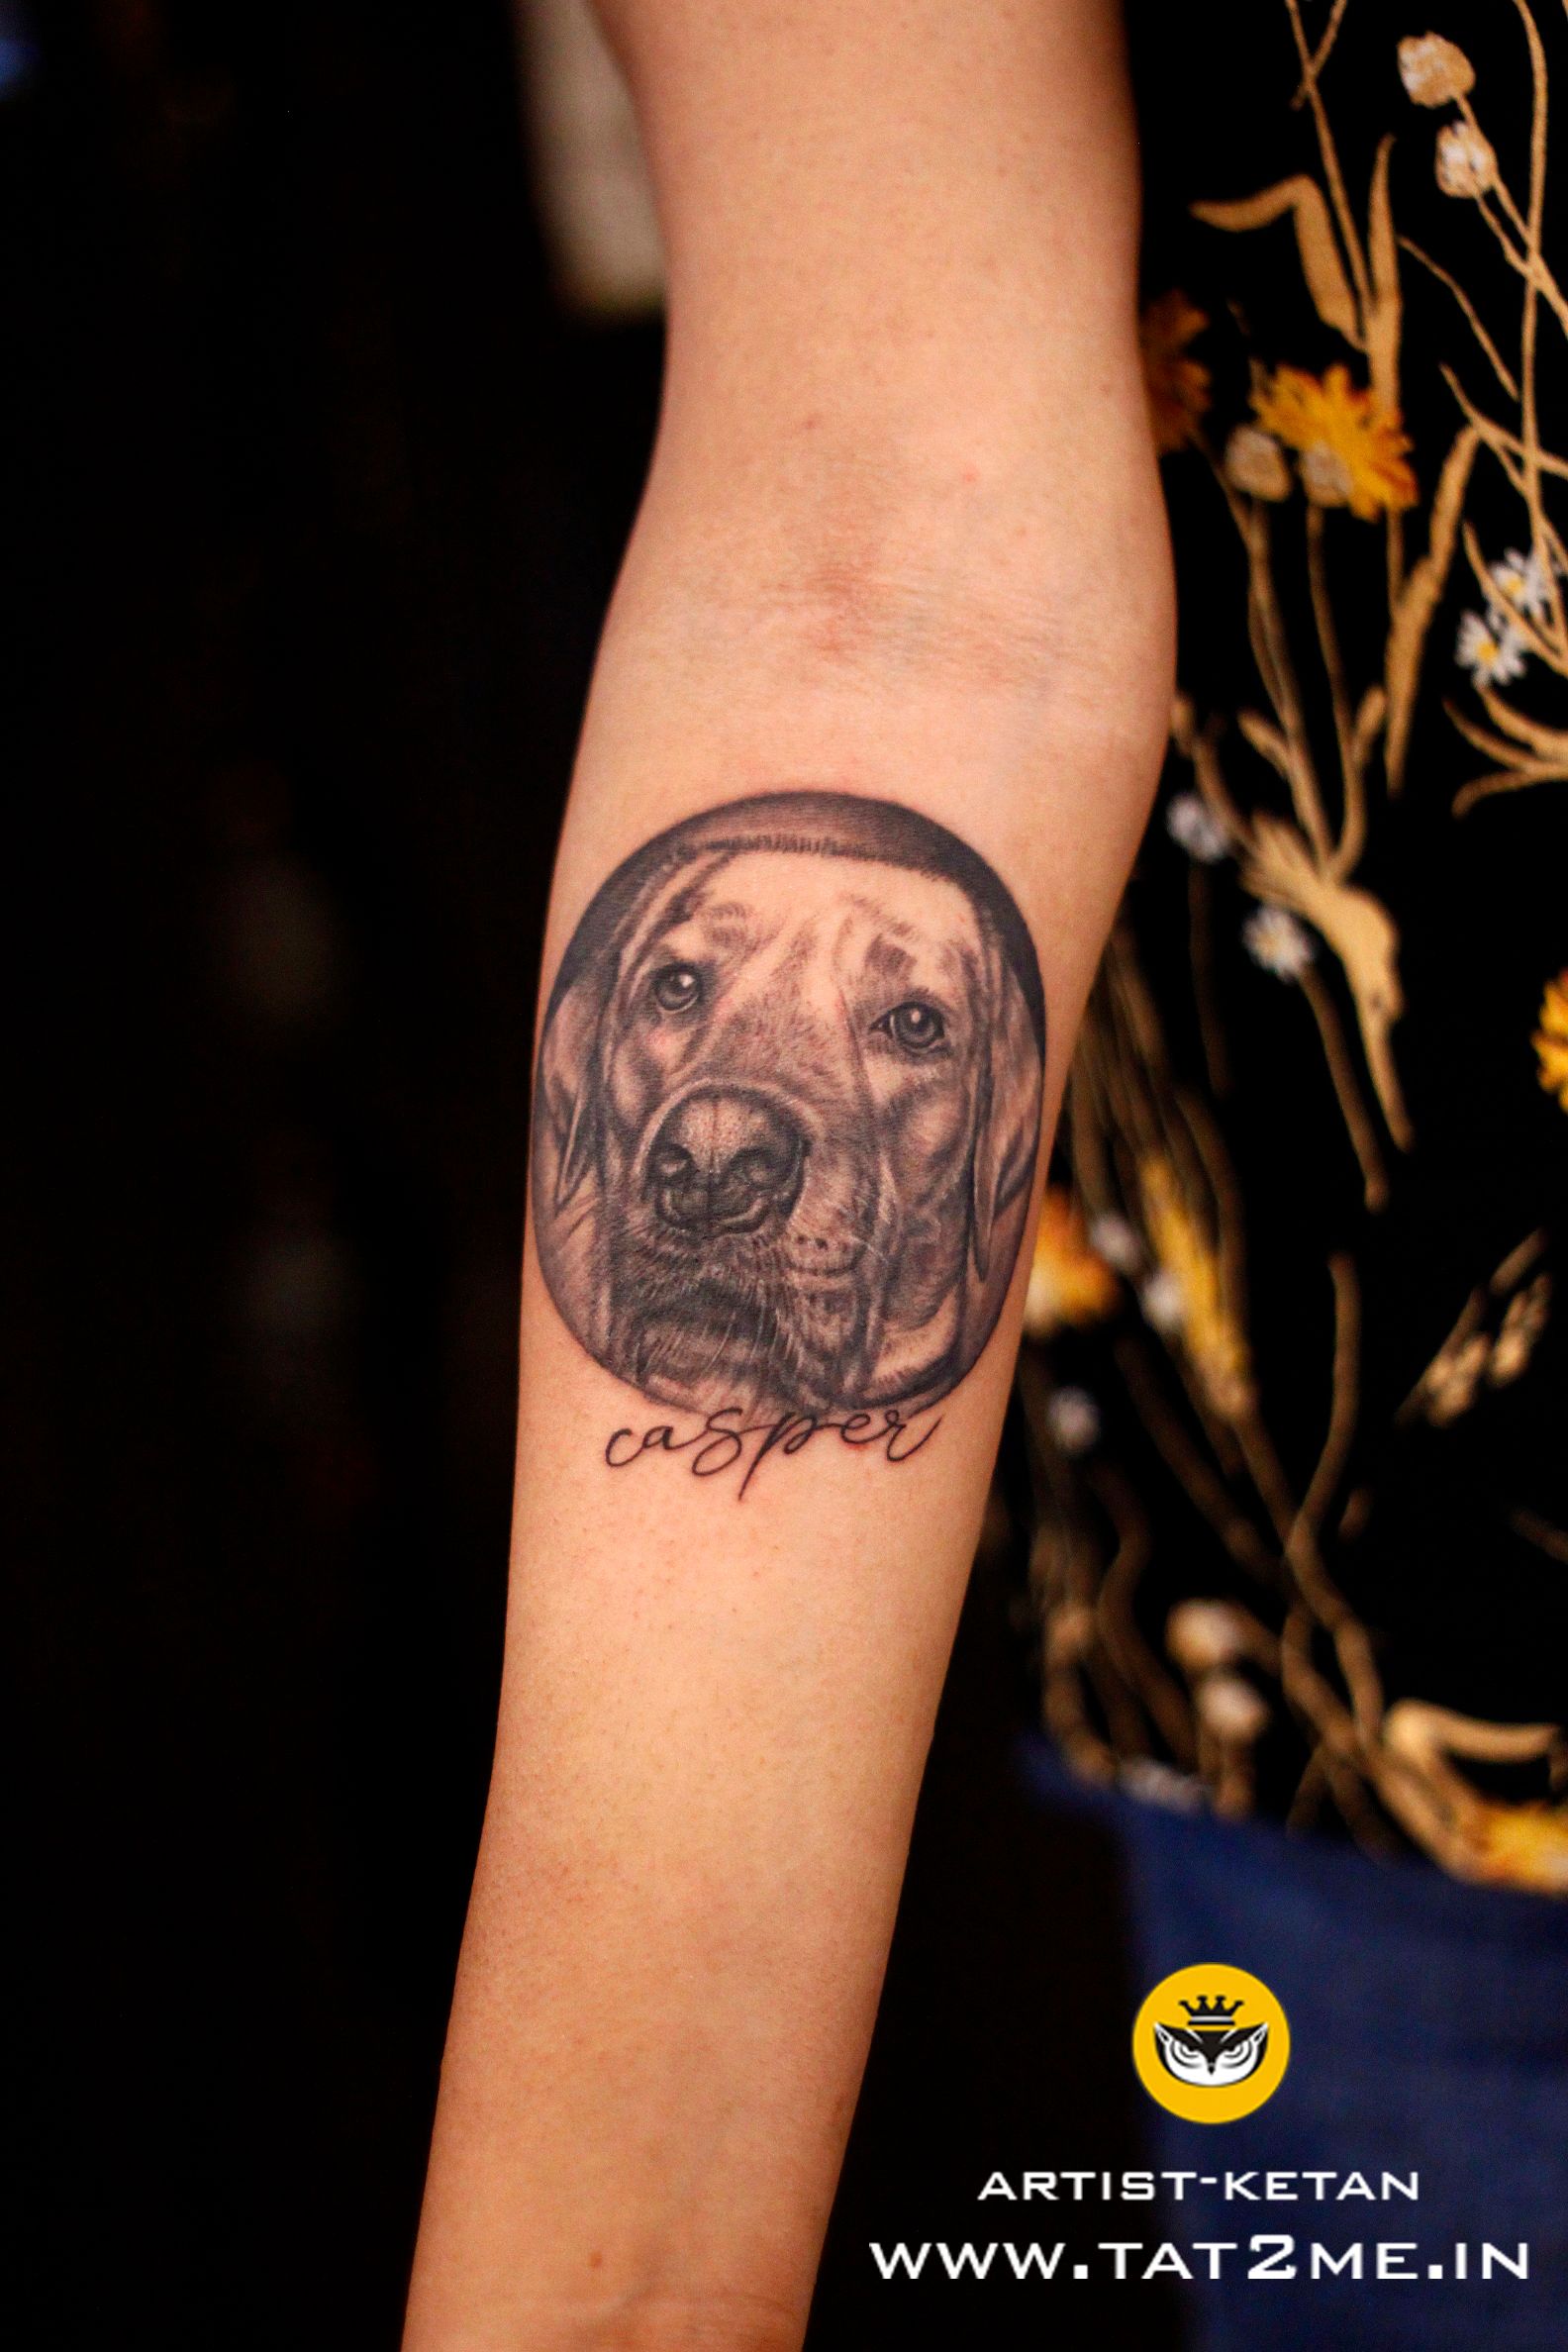 29 Labrador Retriever Tattoo Ideas and Designs  For Men And Women 2020   PetPress  Dog tattoos Animal tattoos Geometric tattoo design